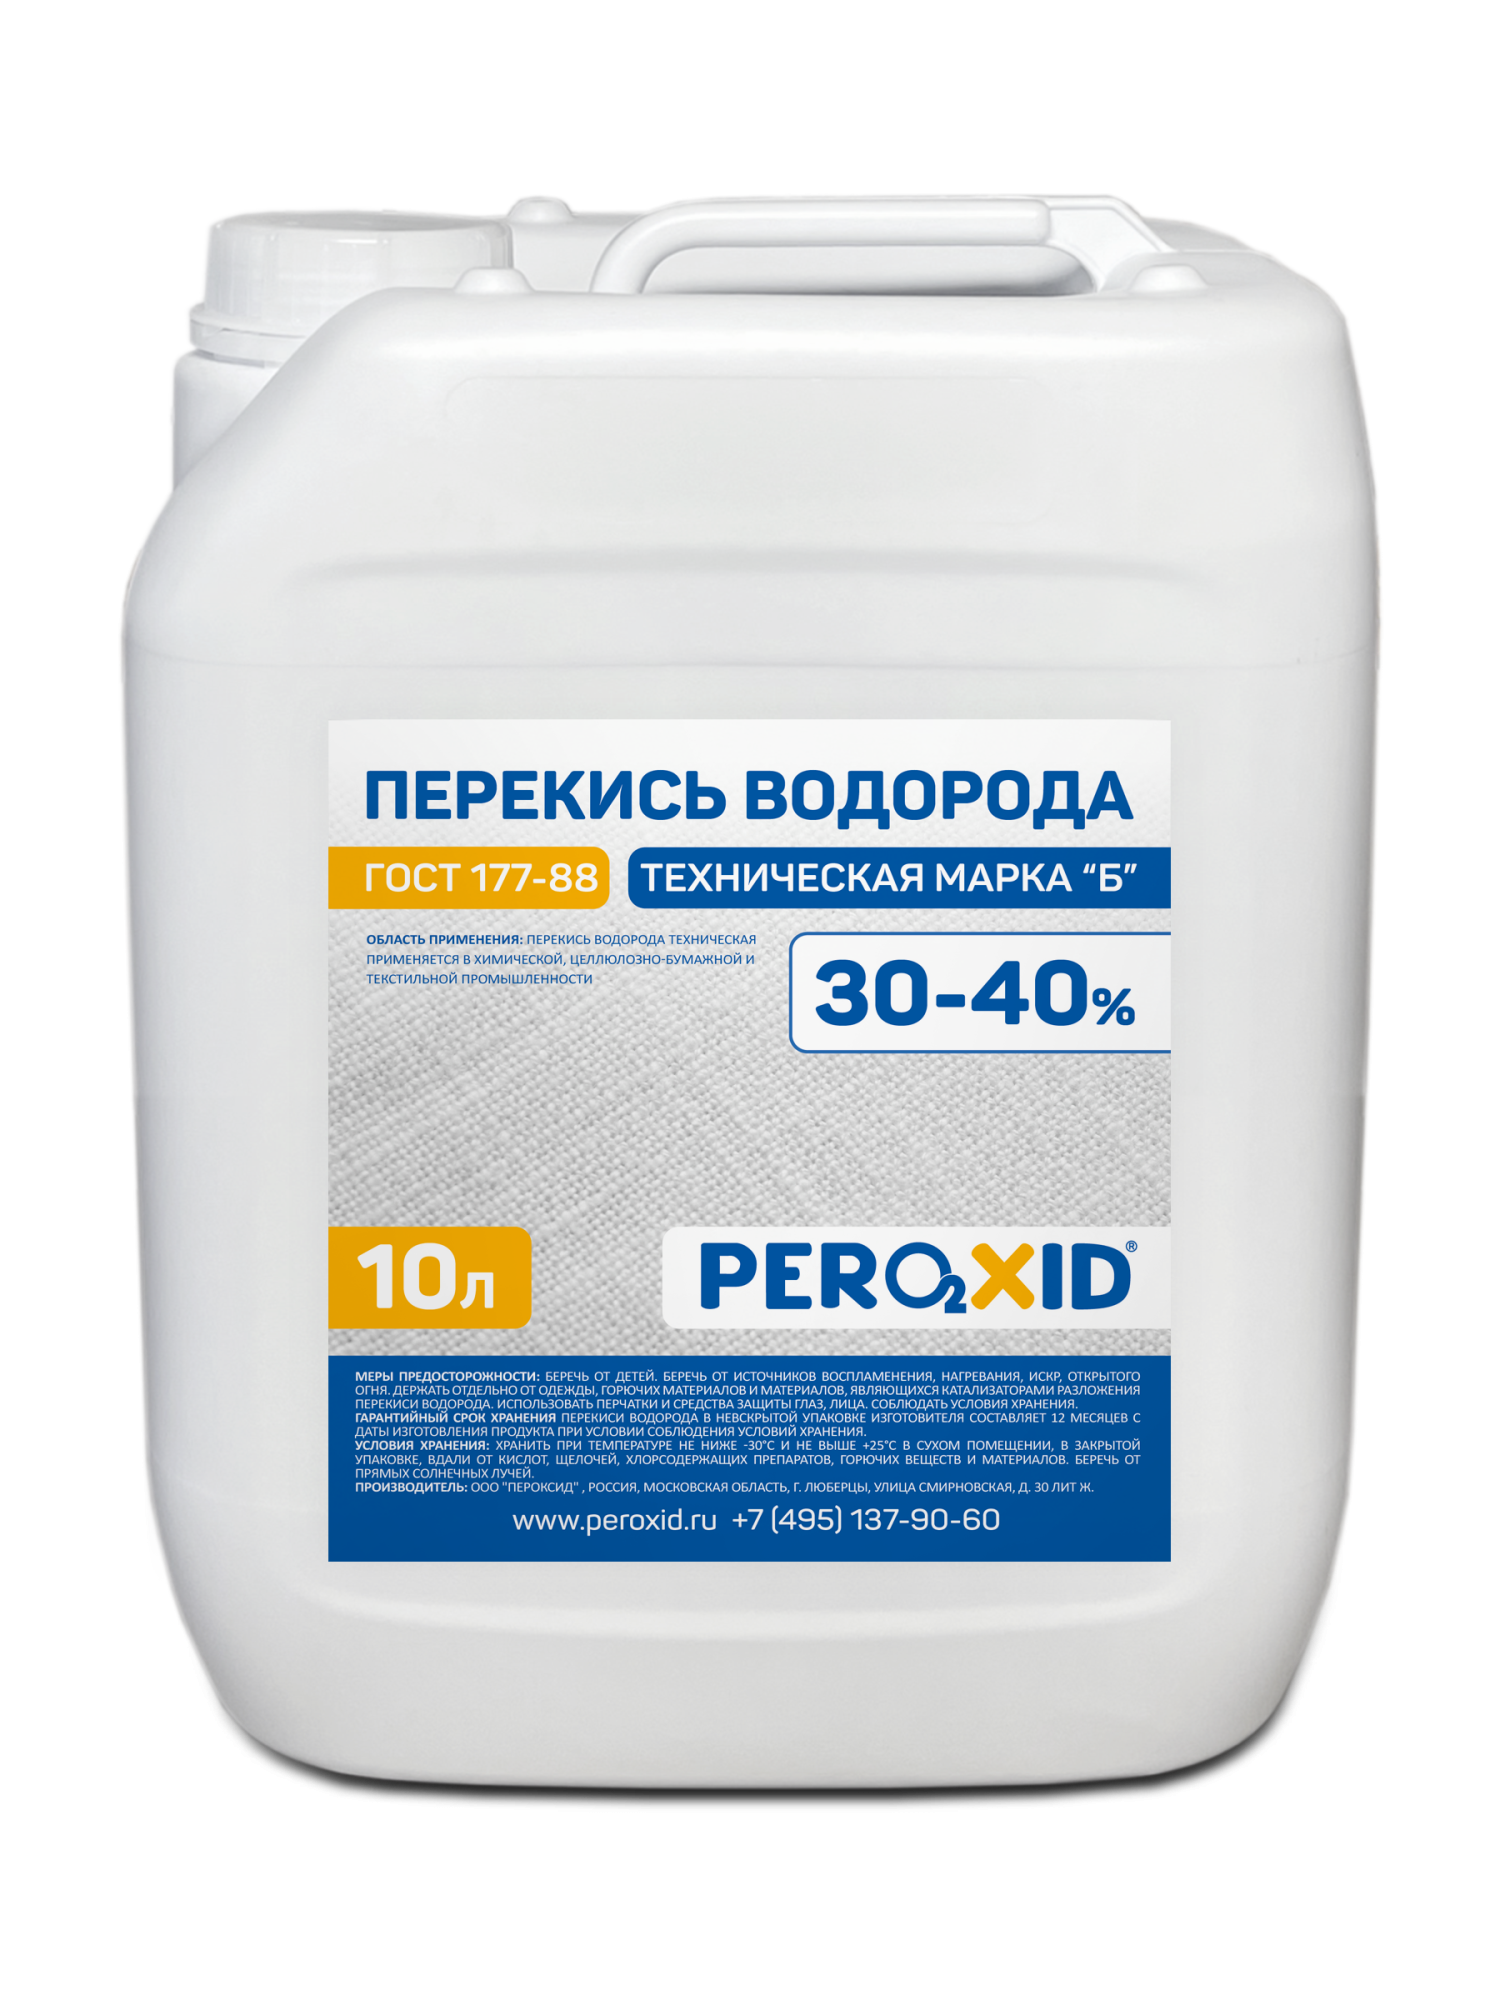 Перекись водорода техническая PEROXID 30-40% марка Б ГОСТ 177-88 10 л/12 кг